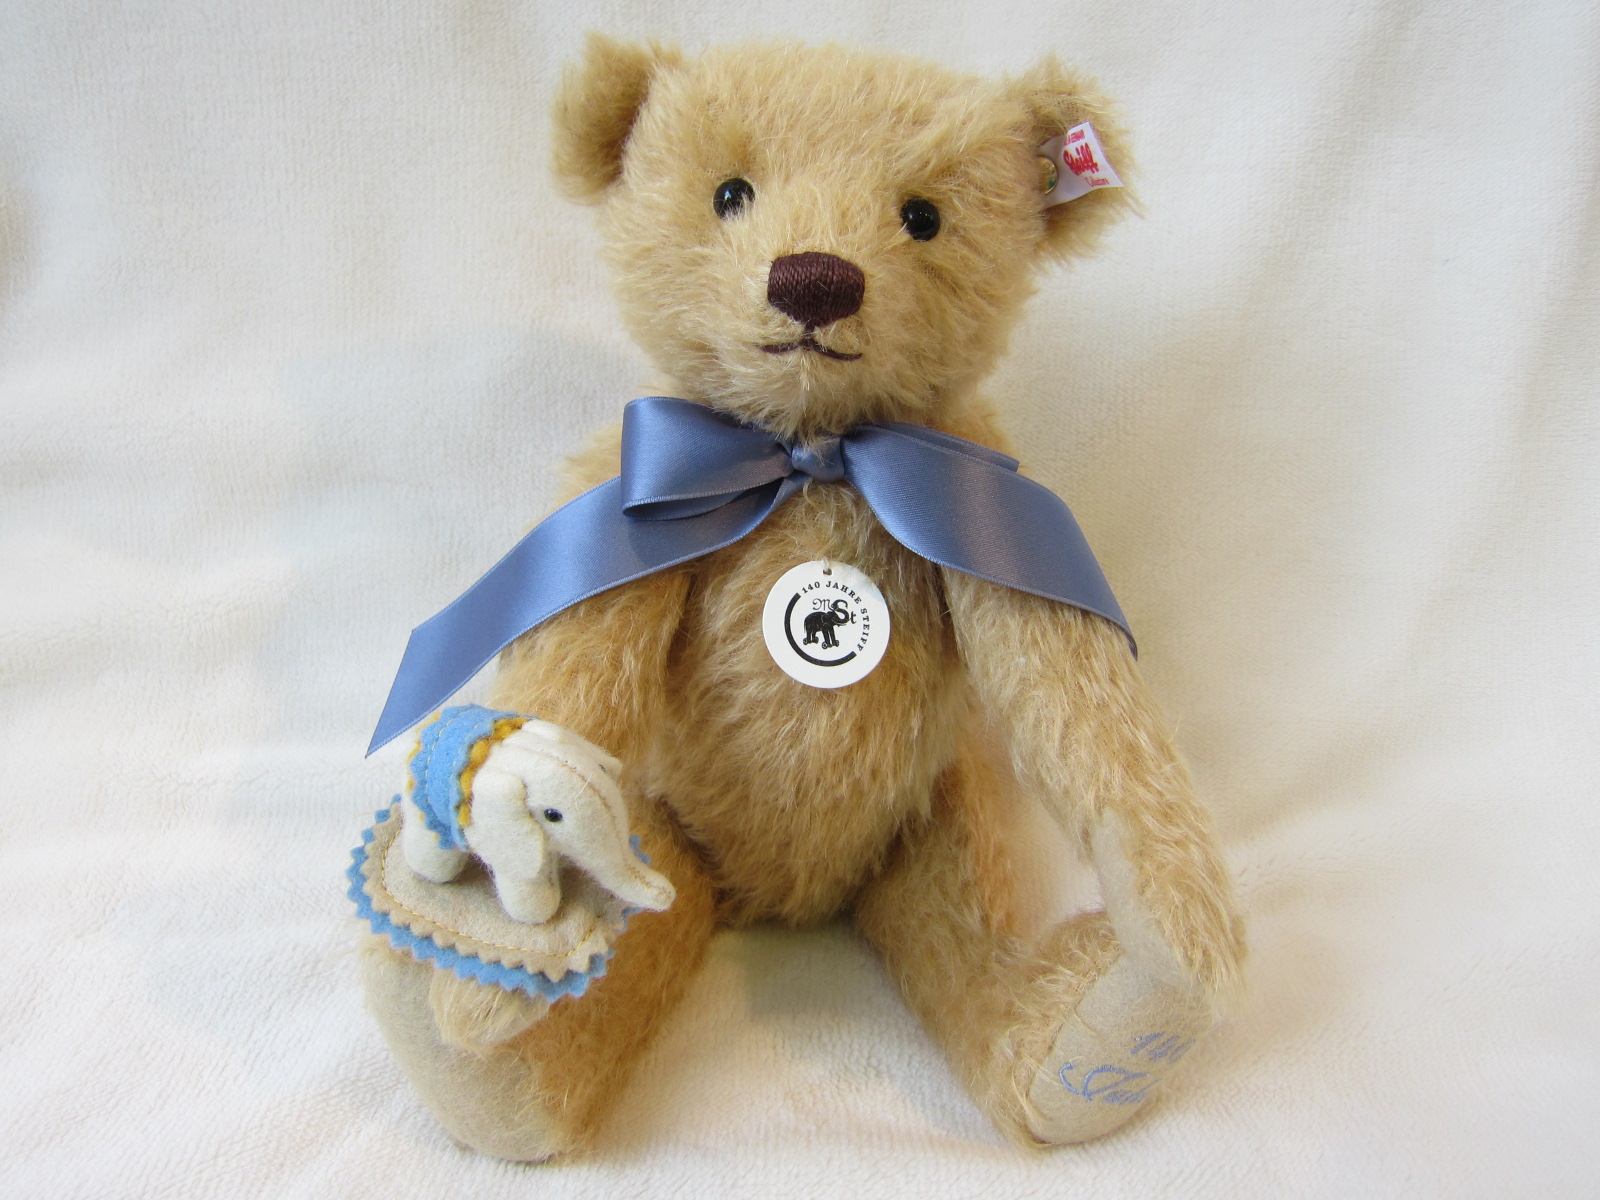 【シュタイフ】Teddy bear with Little felt elephant【テディベアとリトルエレファント】